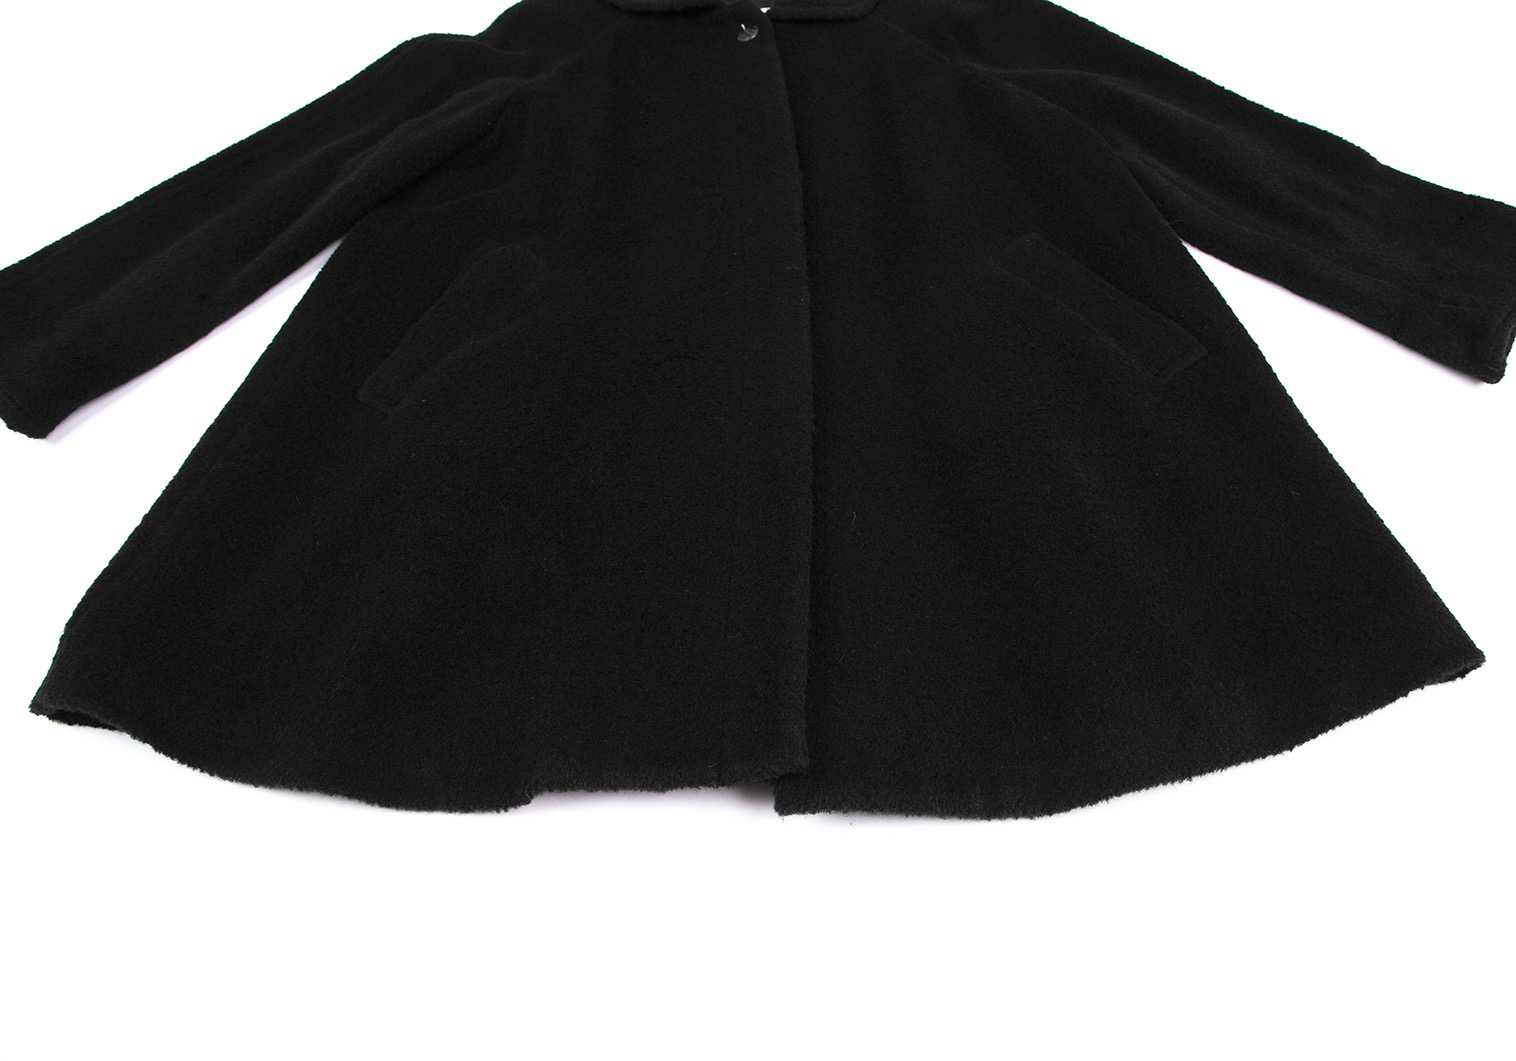 マドモアゼルディオールMademoiselle Dior ウール起毛シングルコート 黒S